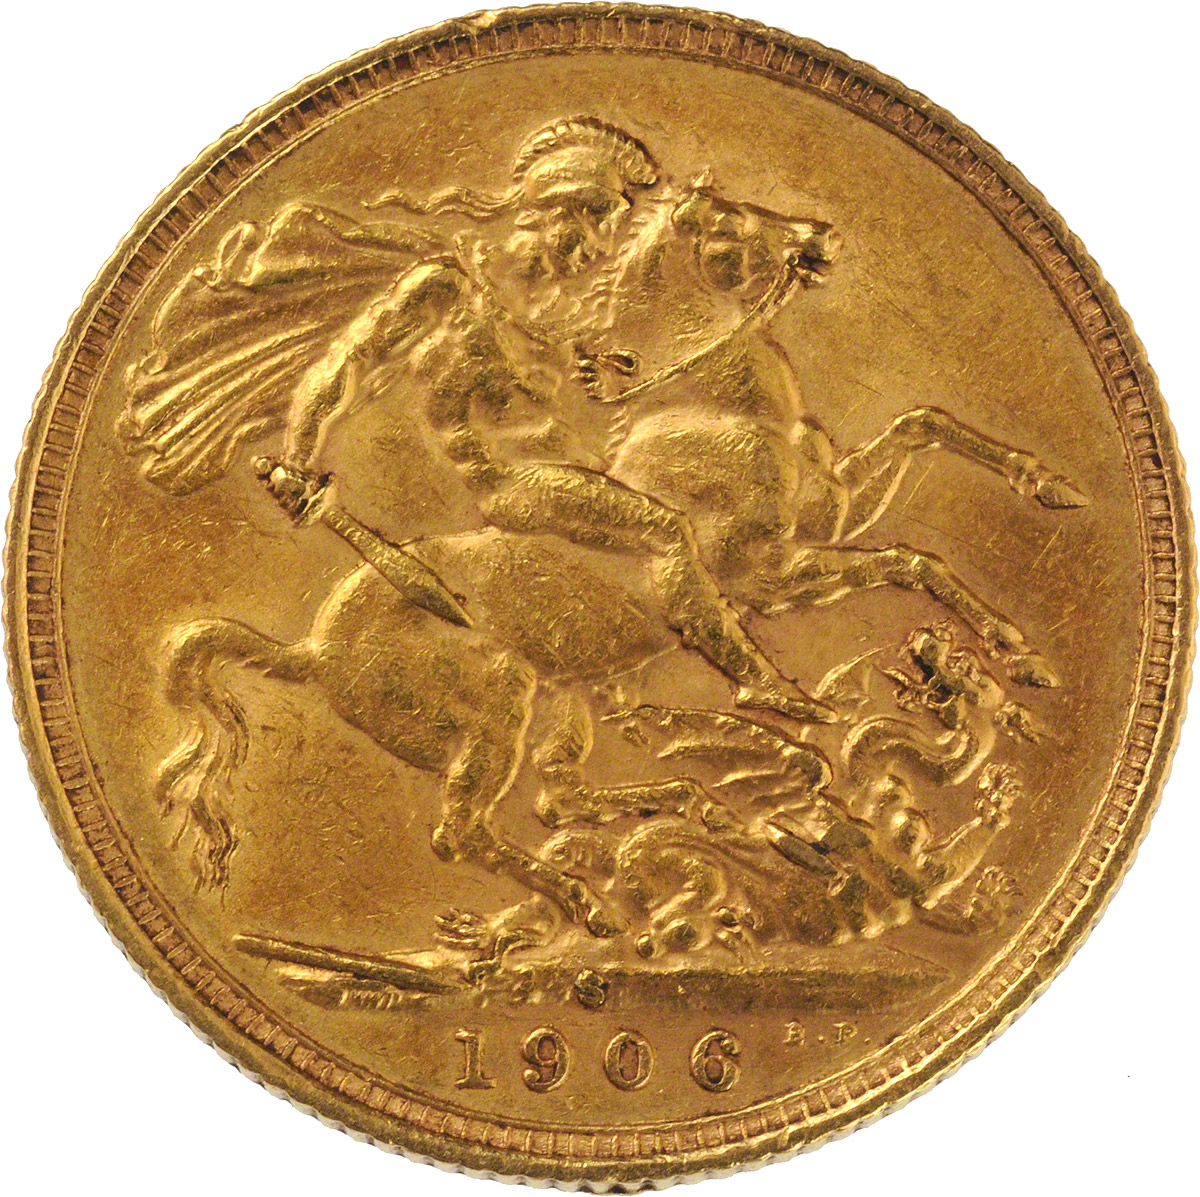 1906 Εδουάρδος Ζ’ (Νομισματοκοπείο Σίδνεϊ)